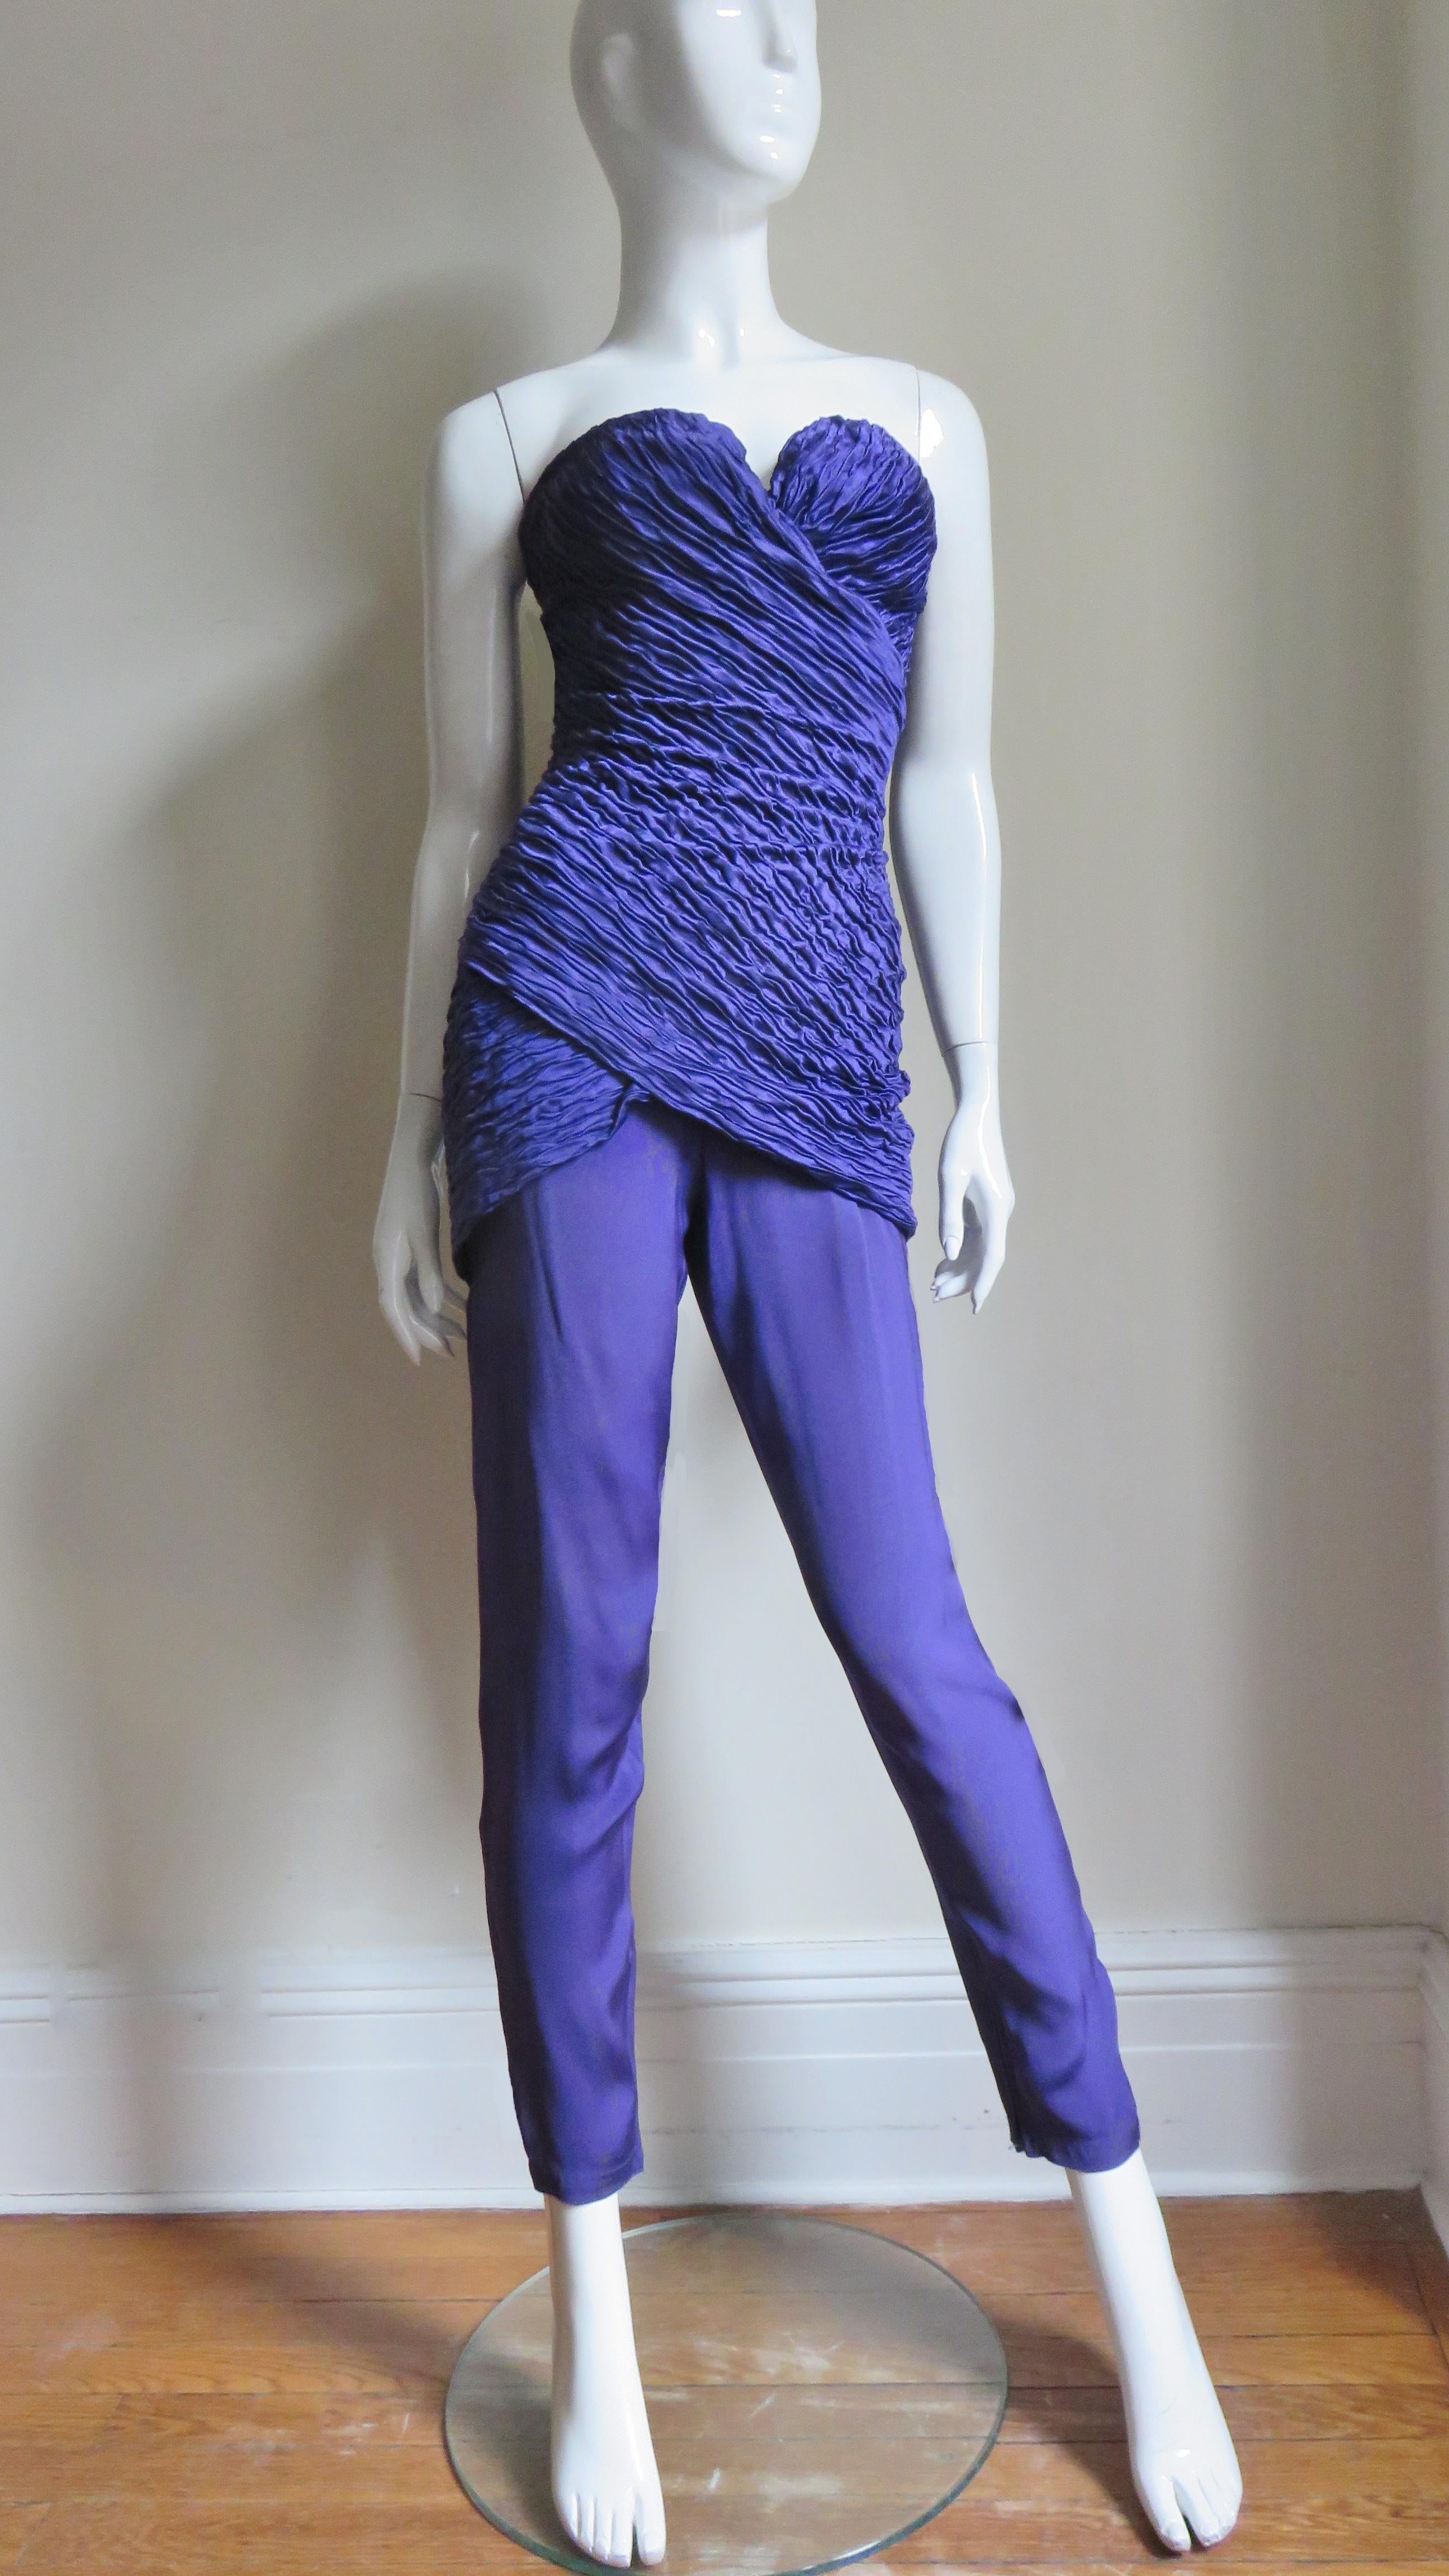 Fabuleuse combinaison bustier en soie violette, issue d'une collection ancienne de Gianni Versace. Le corsage bustier ajusté, micro plissé et désossé se croise et s'enroule autour du buste. La partie étroite du pantalon est dotée de fermetures à